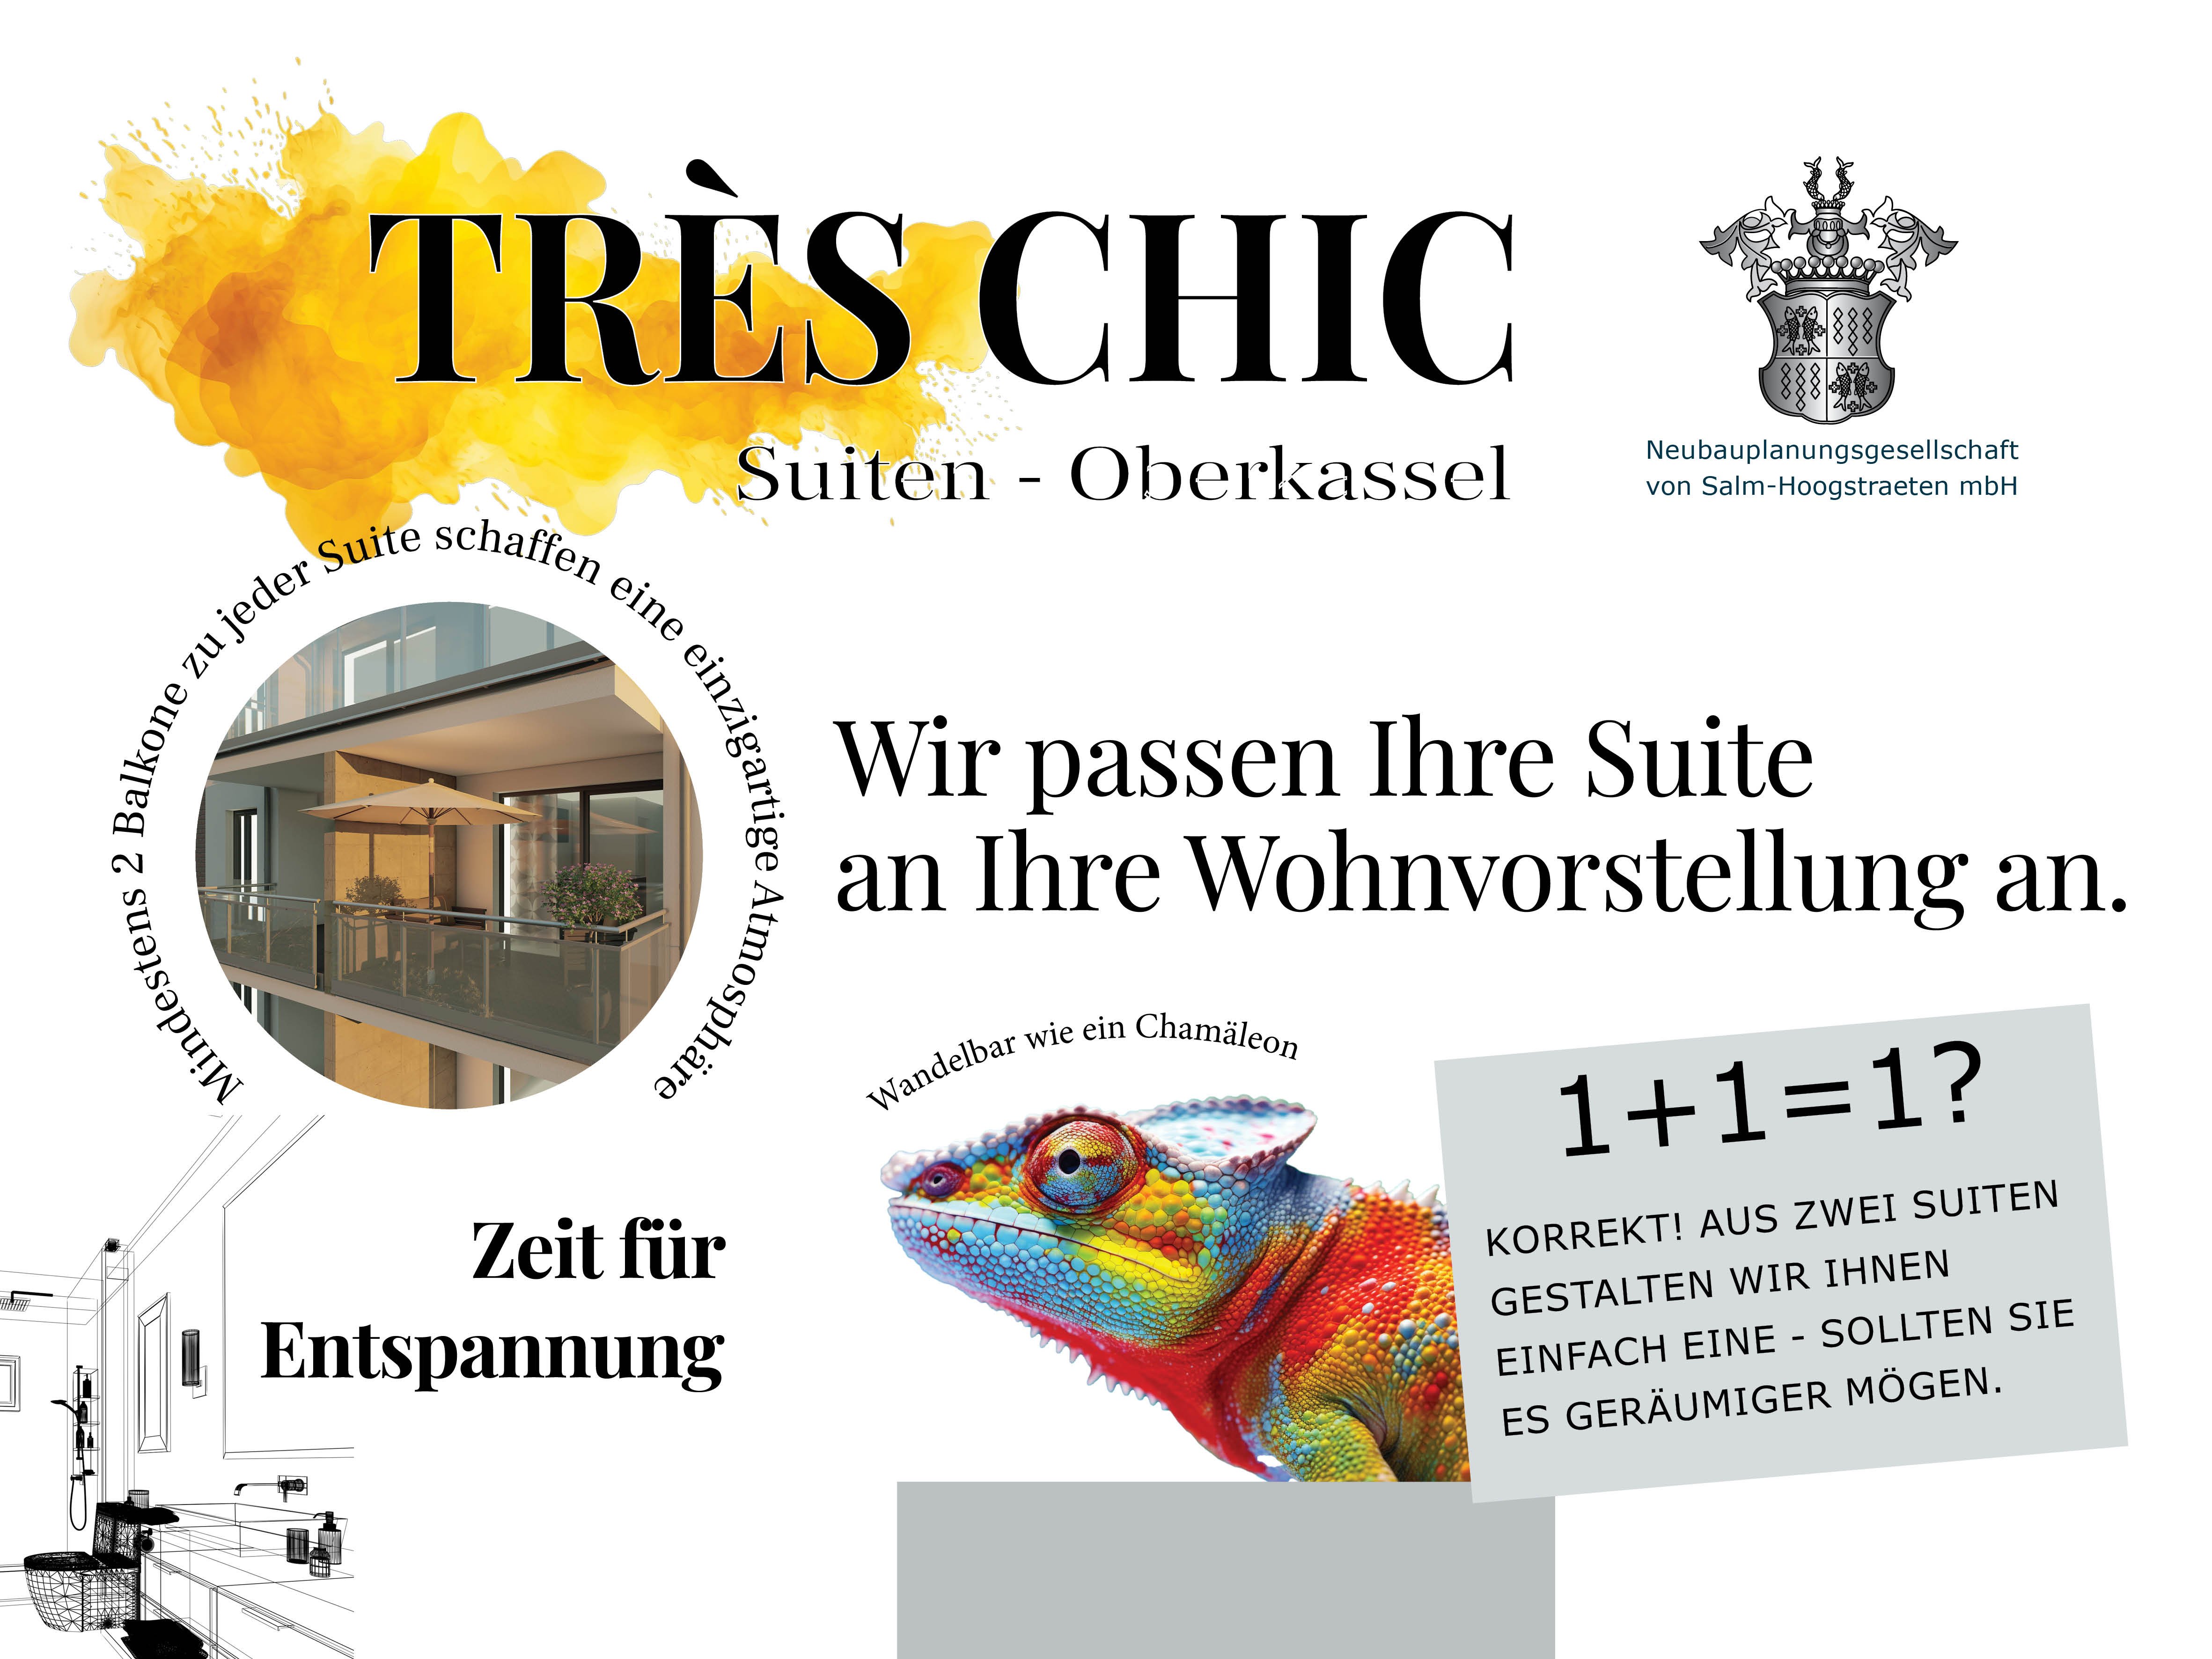 Bild Neubau Trés chic Suiten-Oberkassel, Düsseldorf